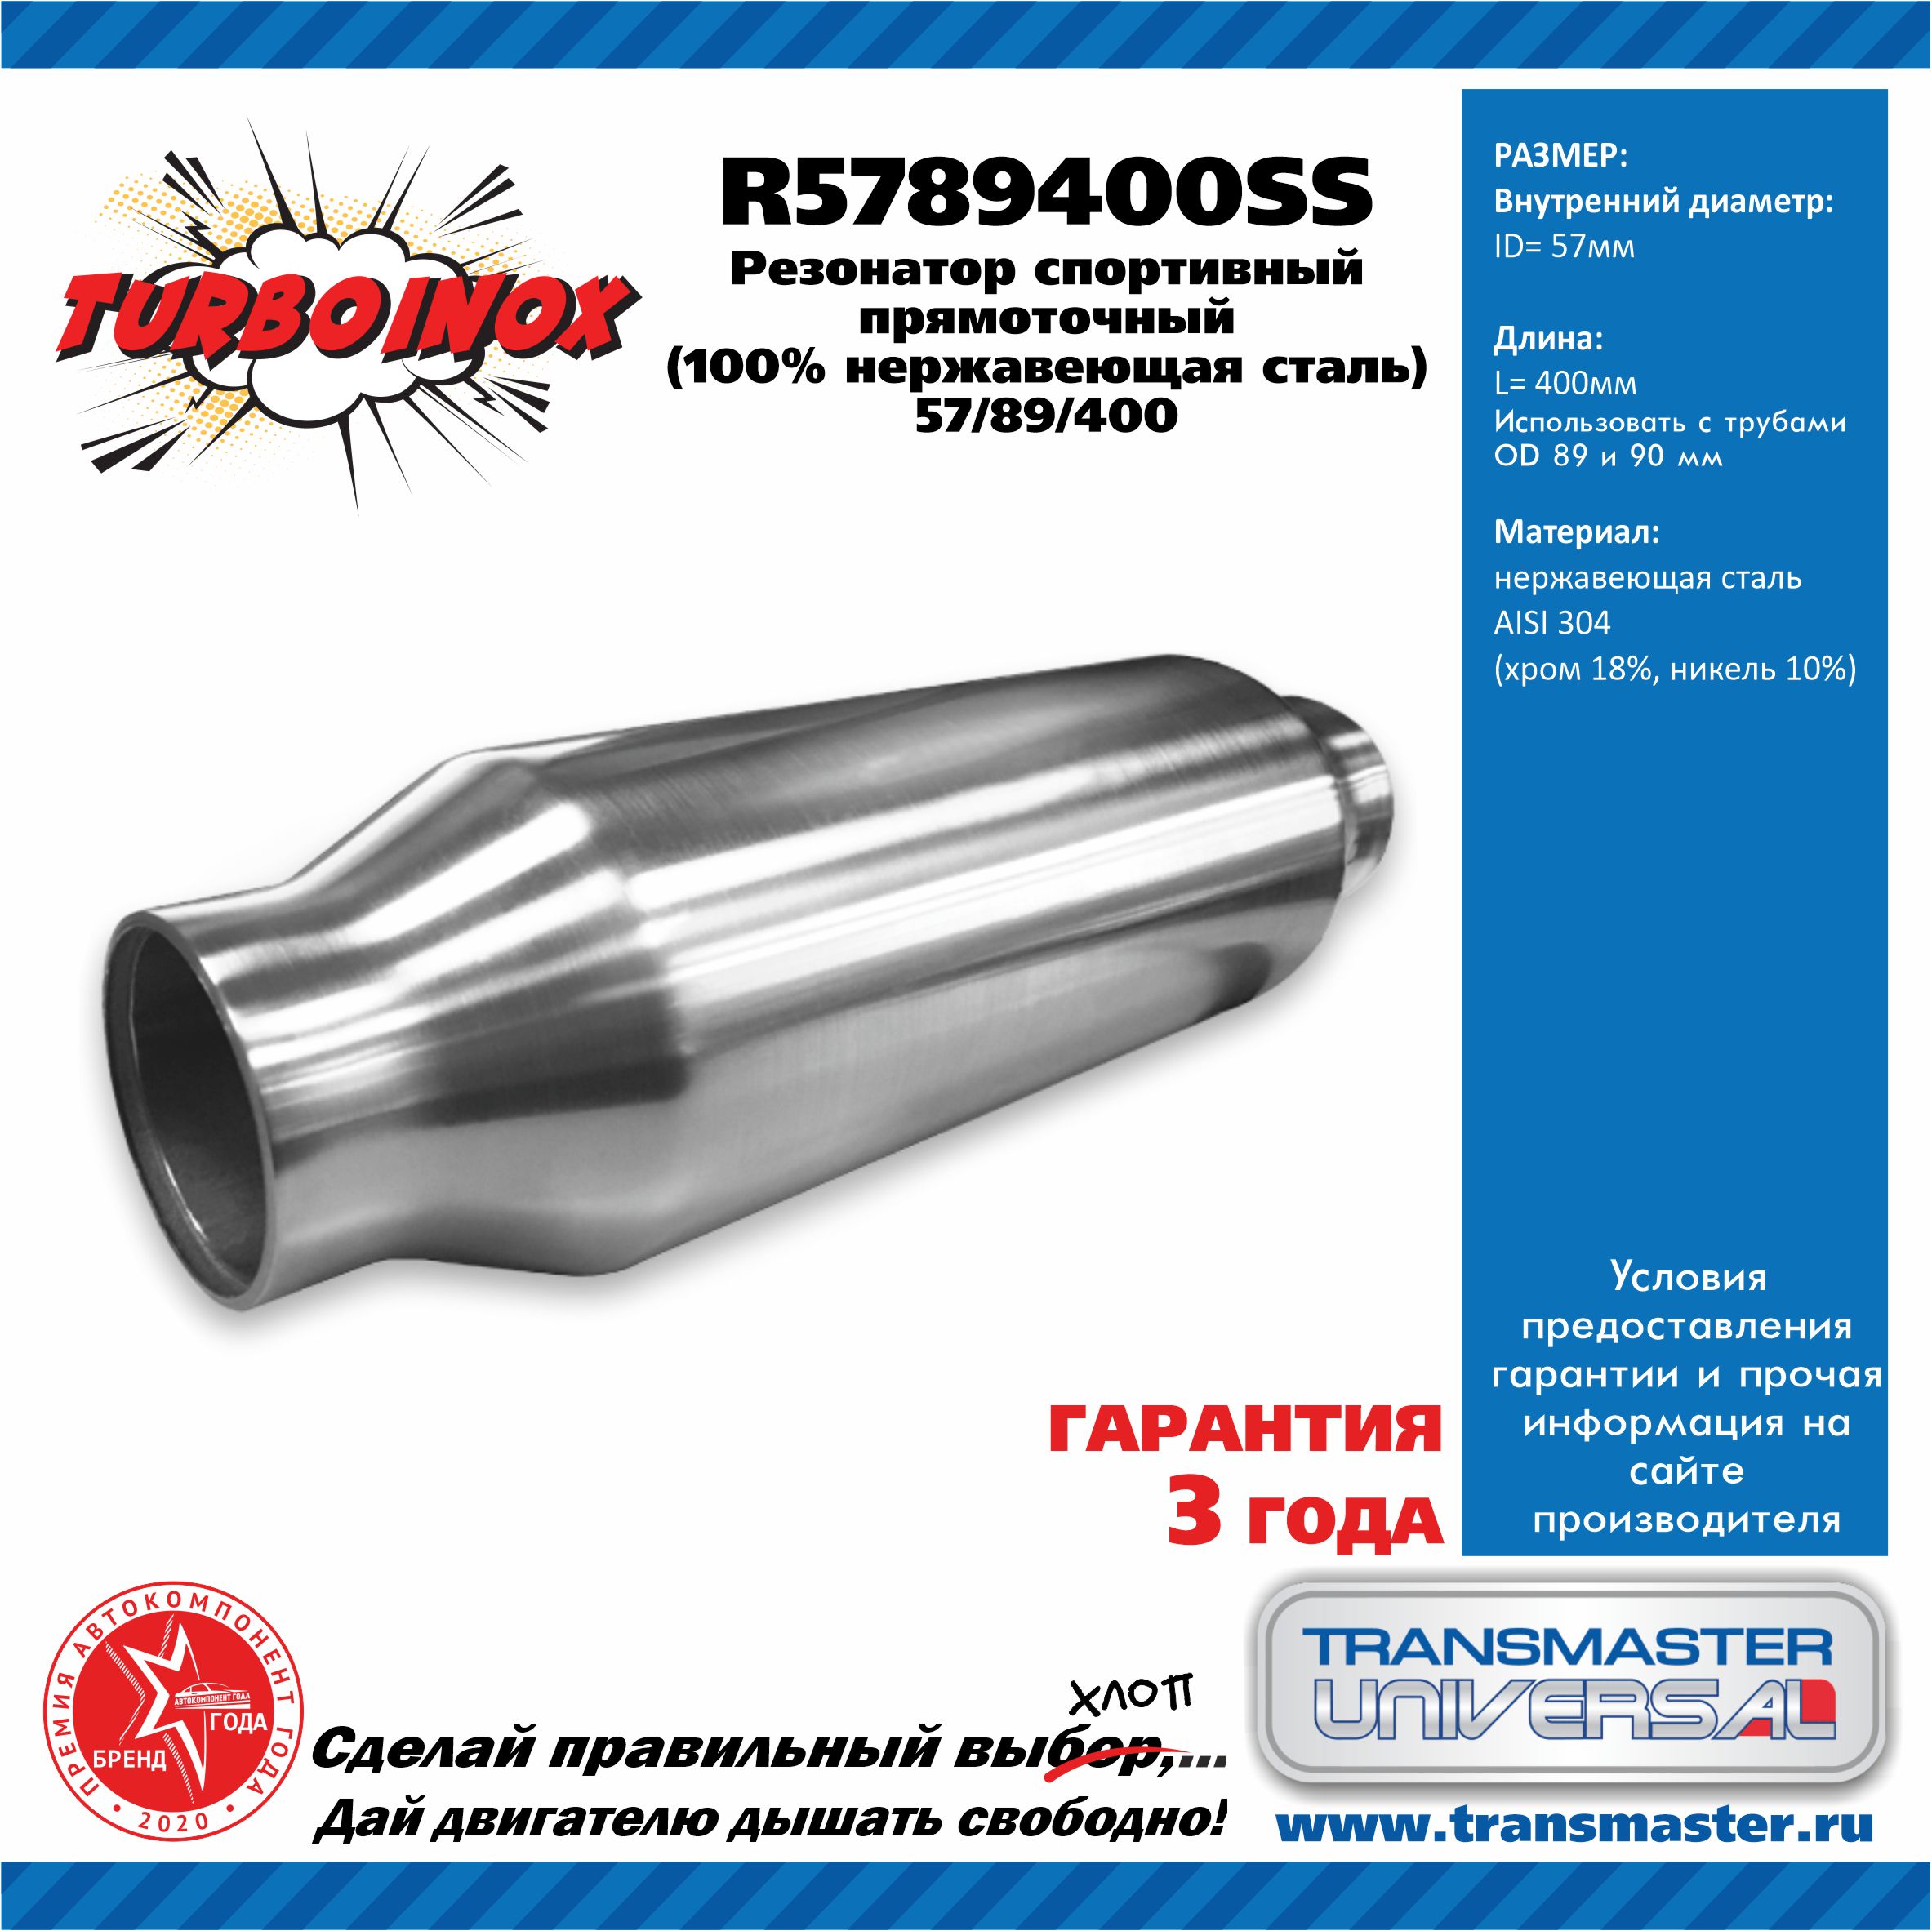 Резонатор спортивный прямоточный серия turboinox (100% нержавеющая сталь) - TRANSMASTER UNIVERSAL R5789400SS